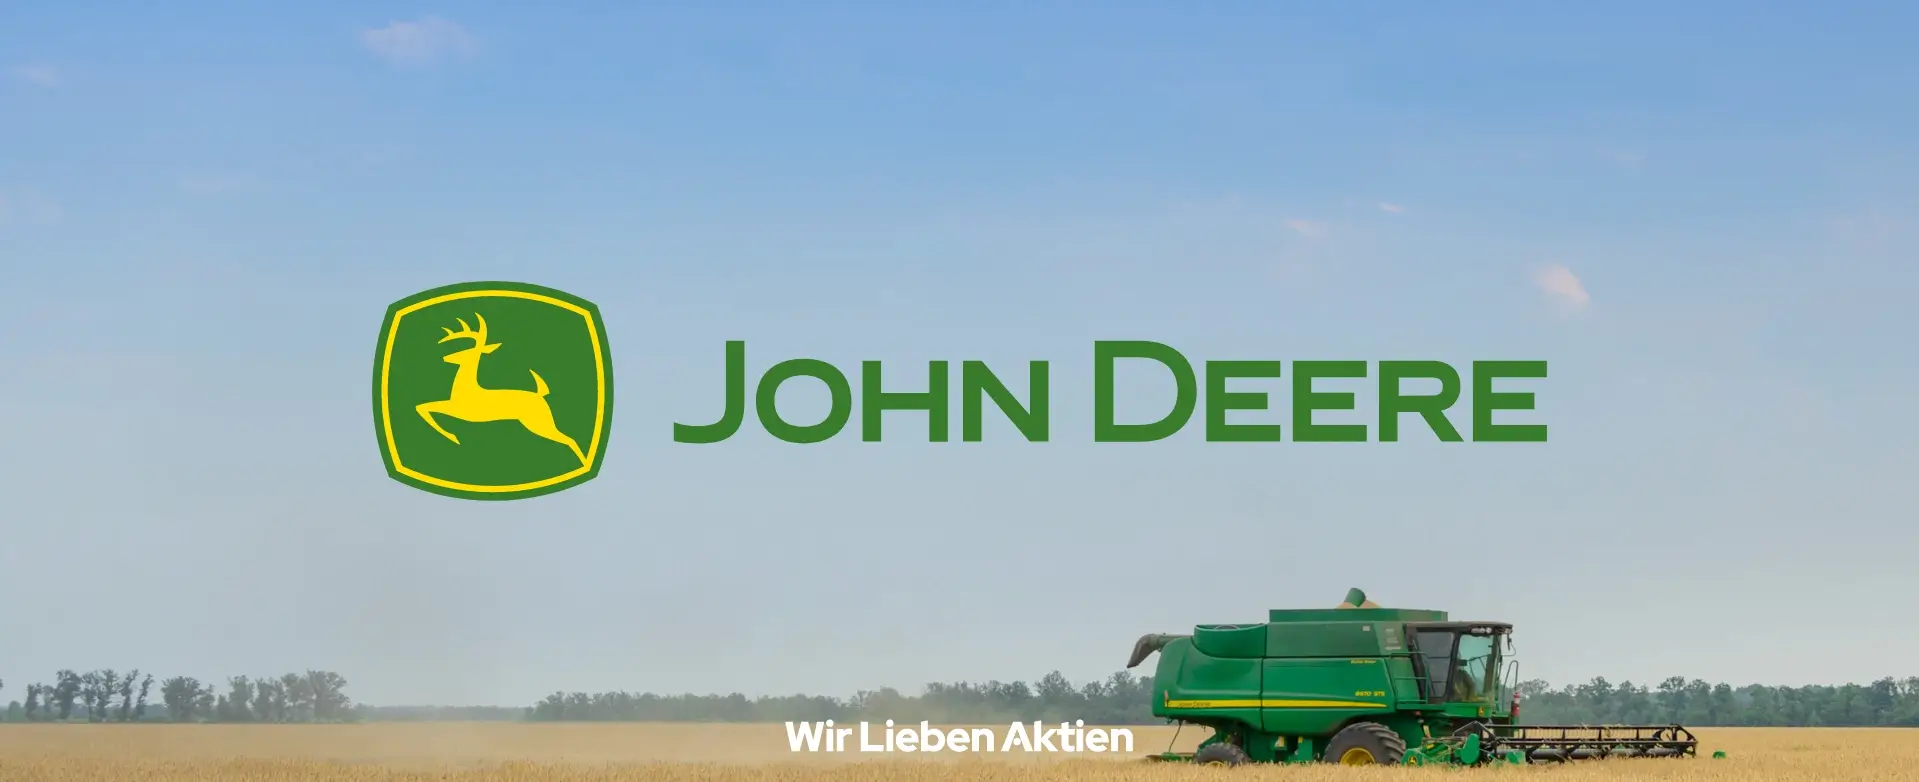 John Deere Aktie Prognose und Analyse